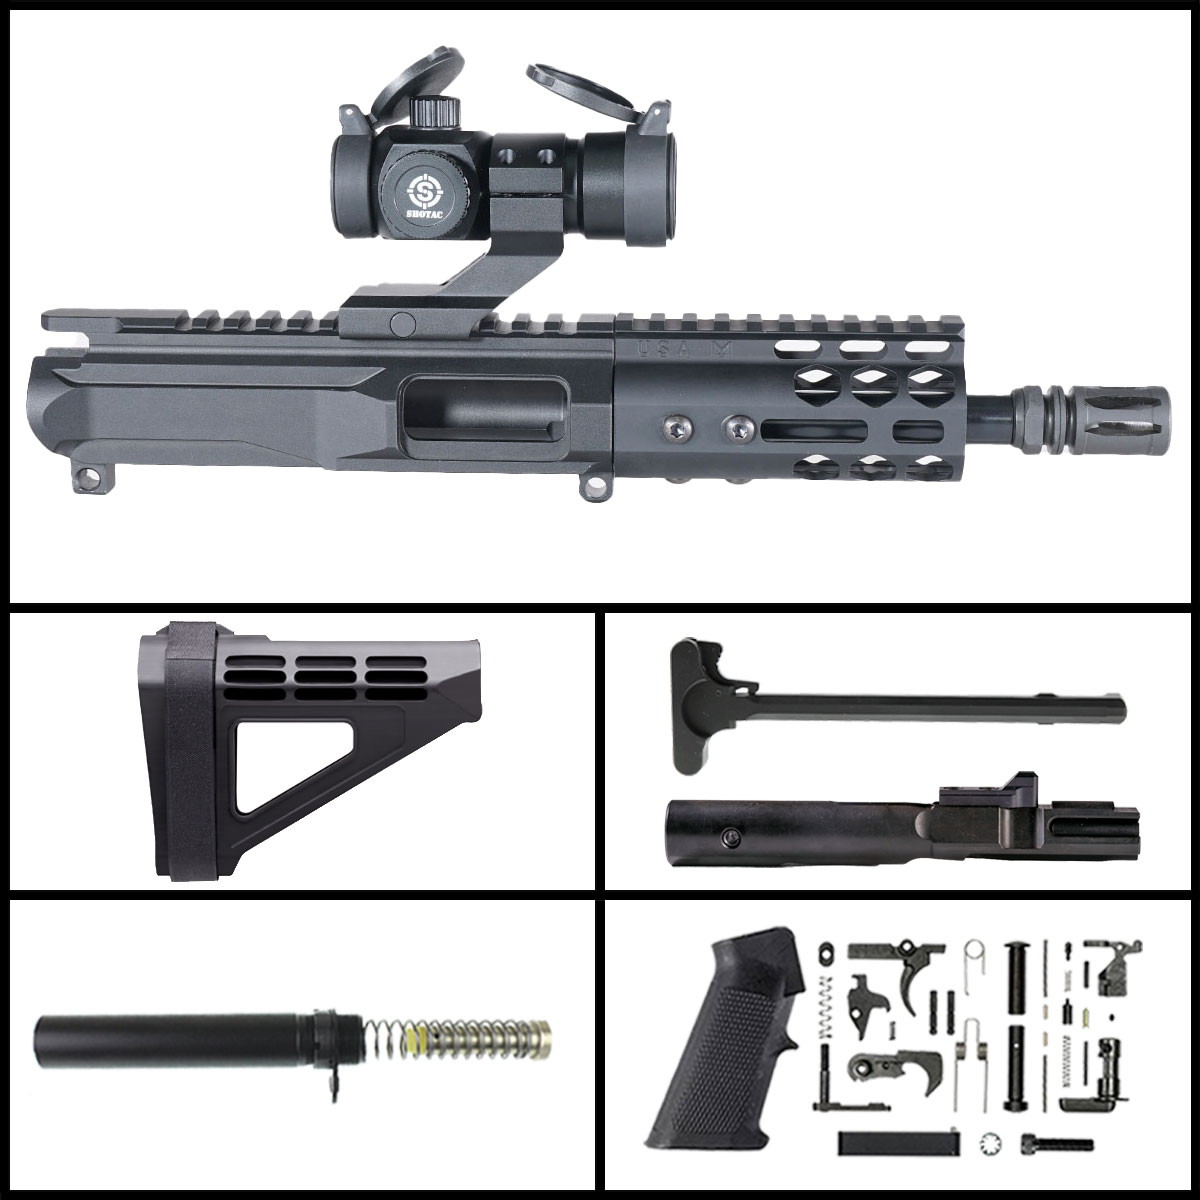 OTD 'Mockingbird Gen 3 w/ Shotac Cantilever' 6-inch AR-15 9mm Nitride Pistol Full Build Kit